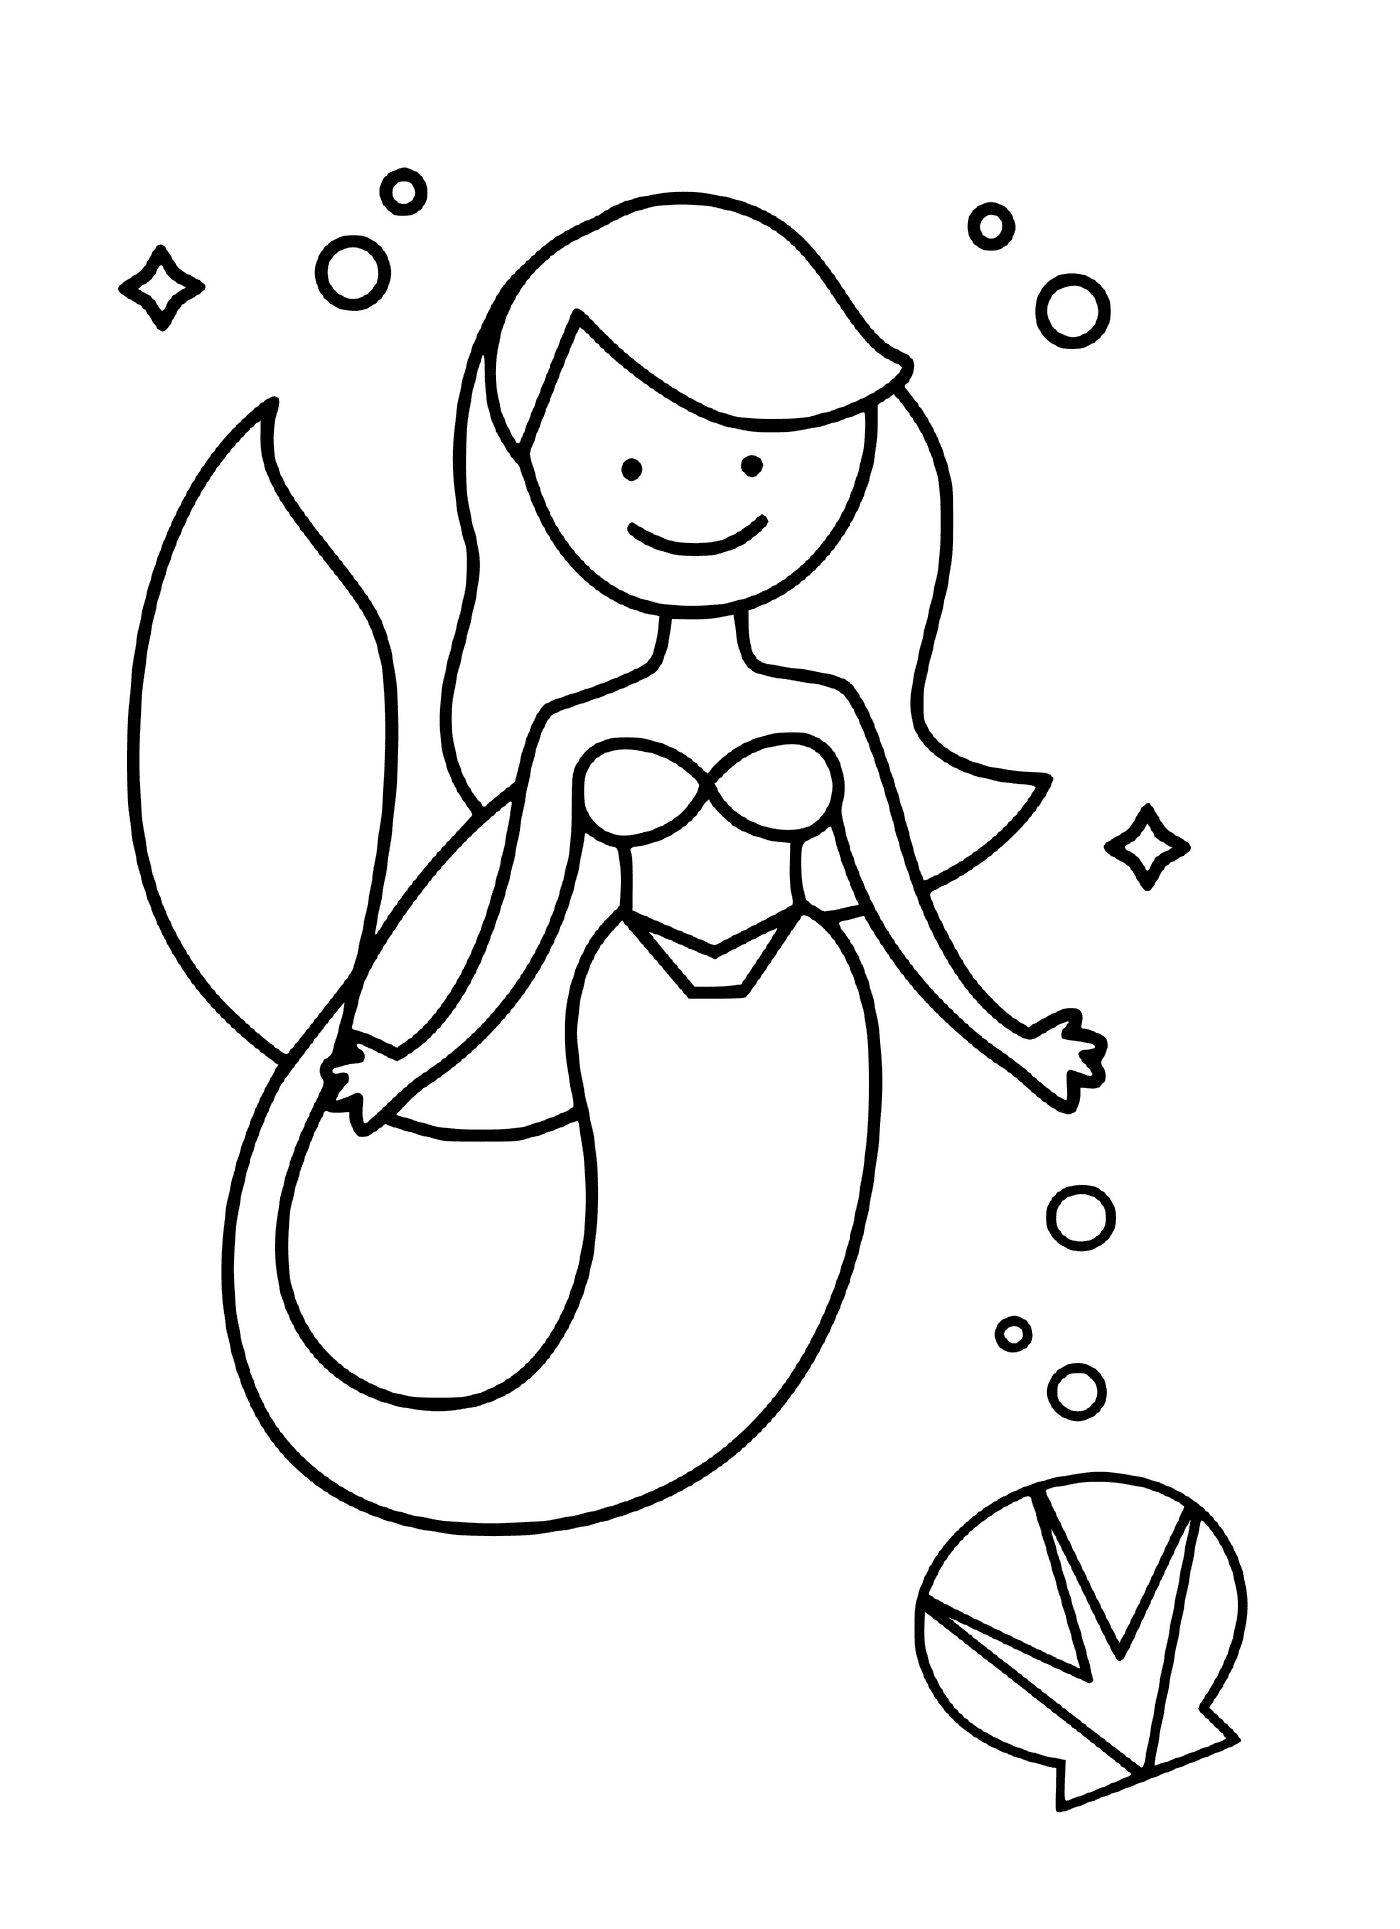 coloriage La princesse sirene comme Ariel de la Petite Sirene